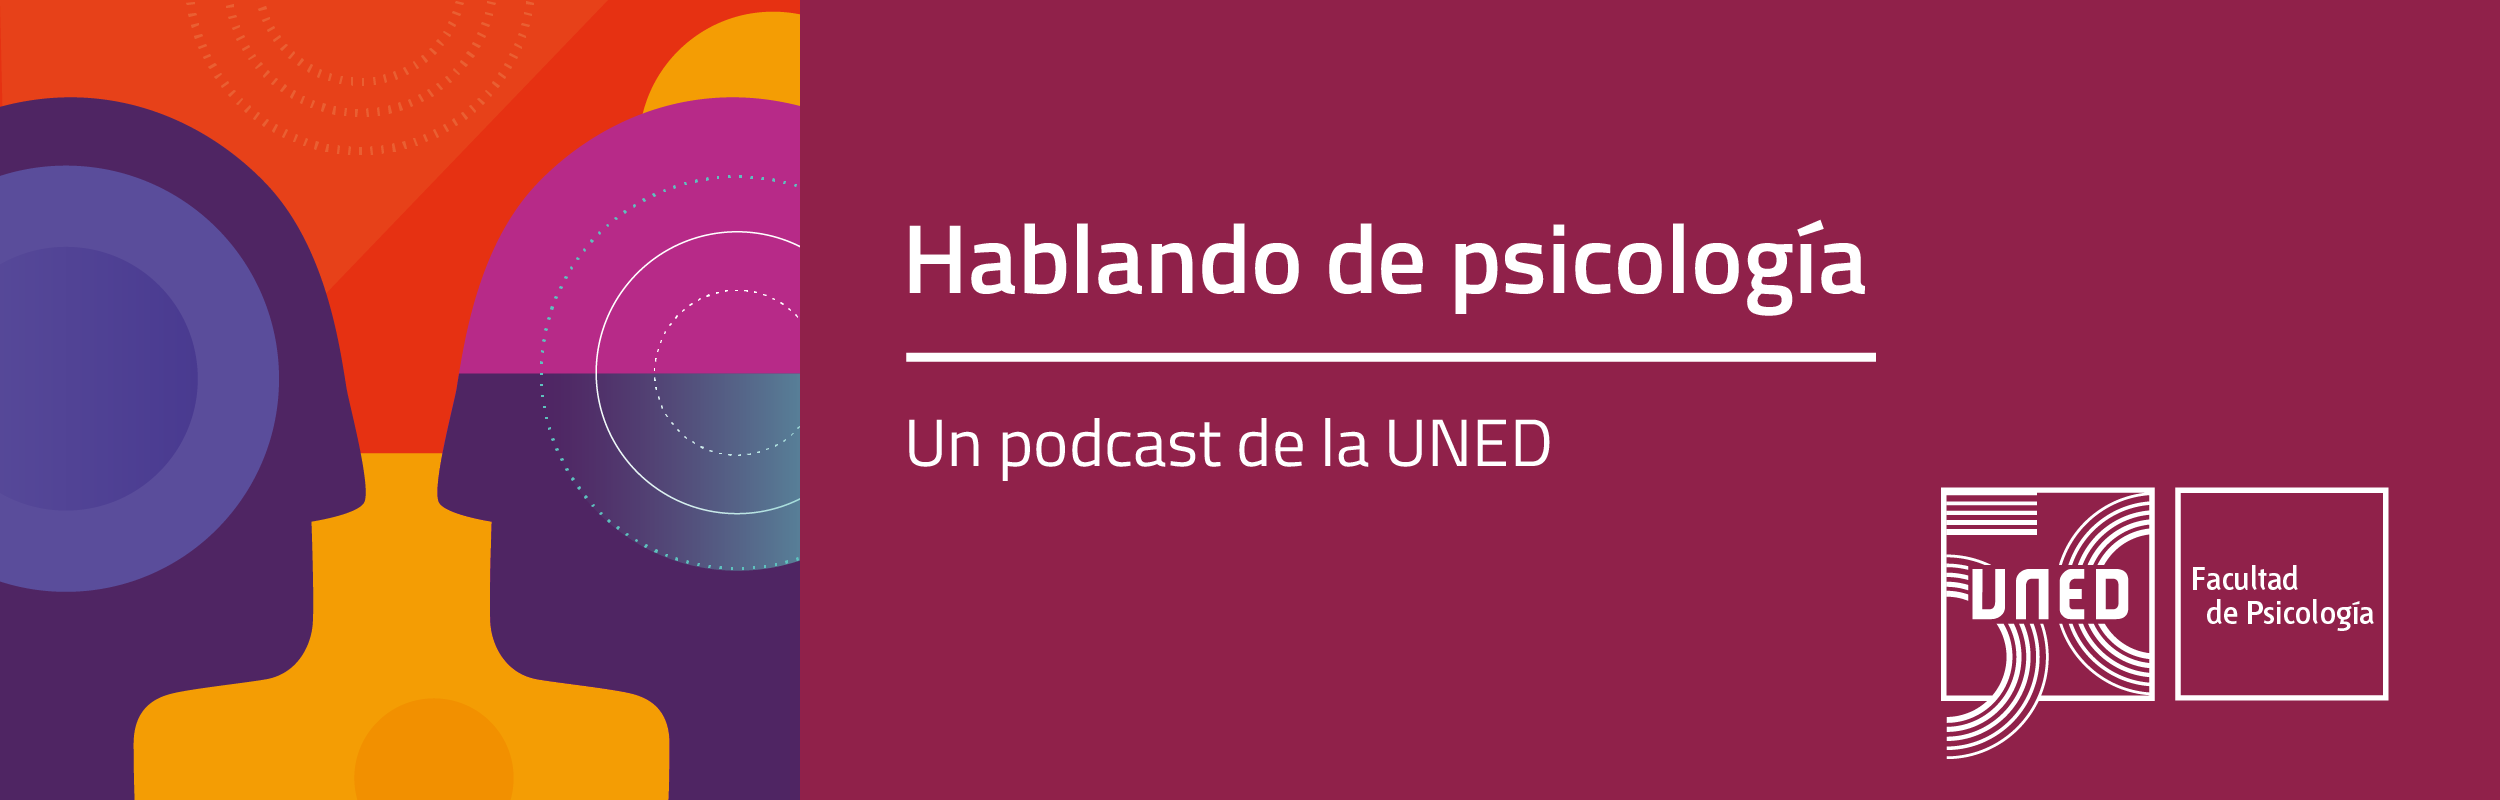 Hablando de Psicología - Un podcast de la UNED